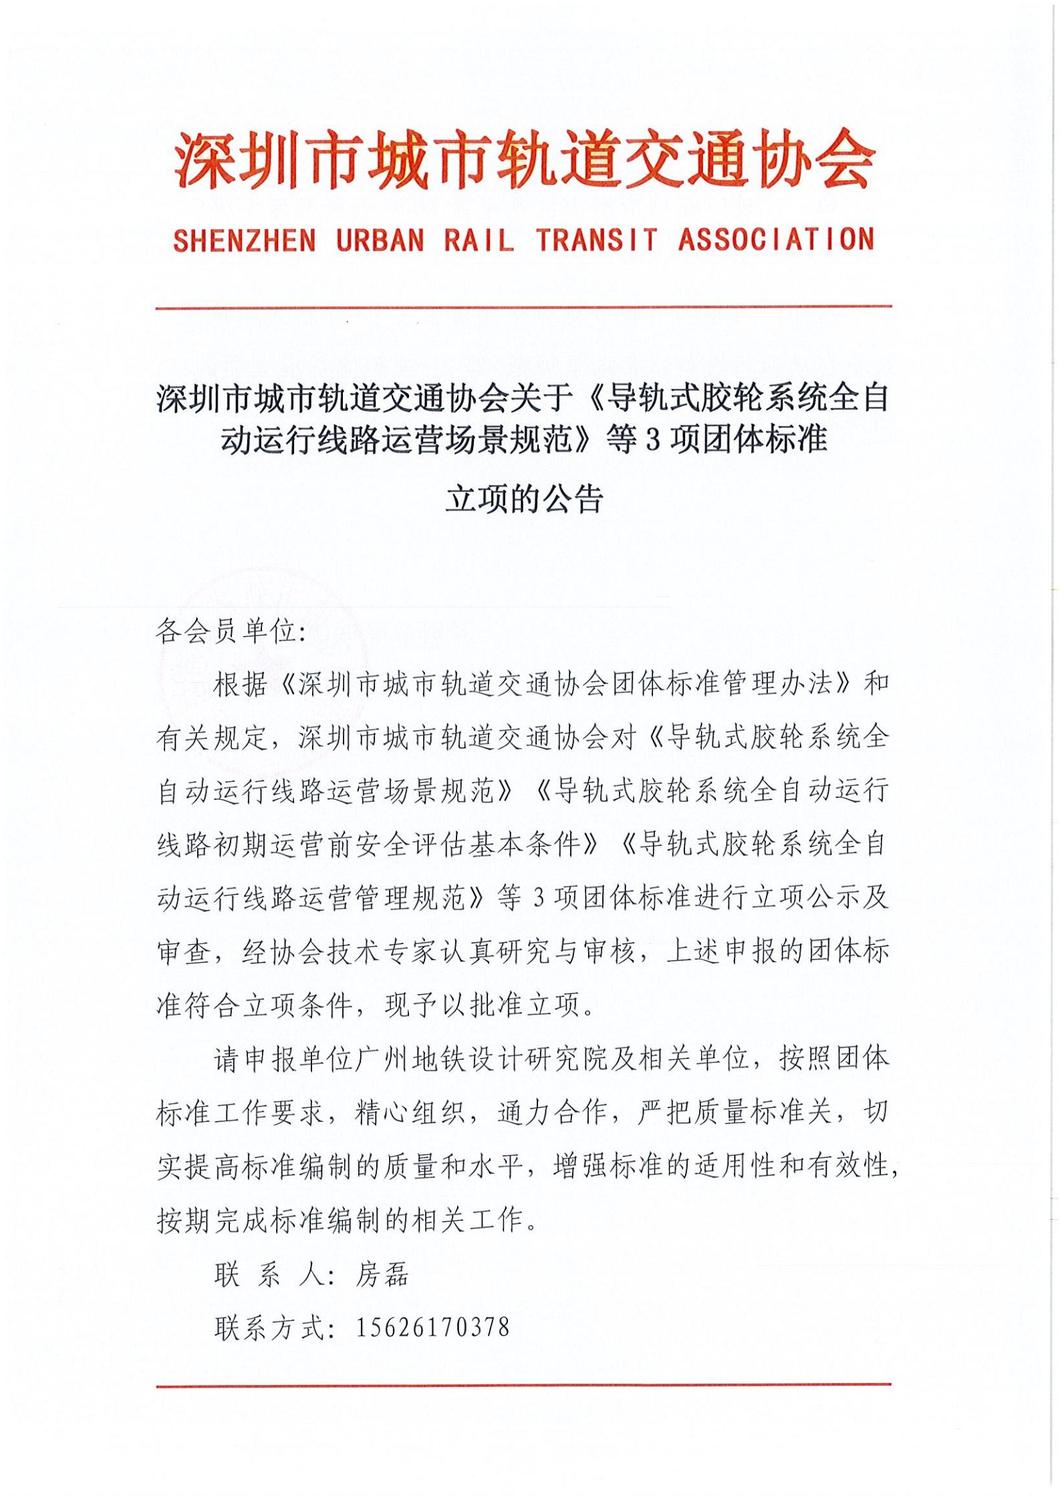 深圳市城市轨道交通协会关于《导轨式胶轮系统全自动运行线路运营场景规范》等3项团体标准立项的公告_00.jpg